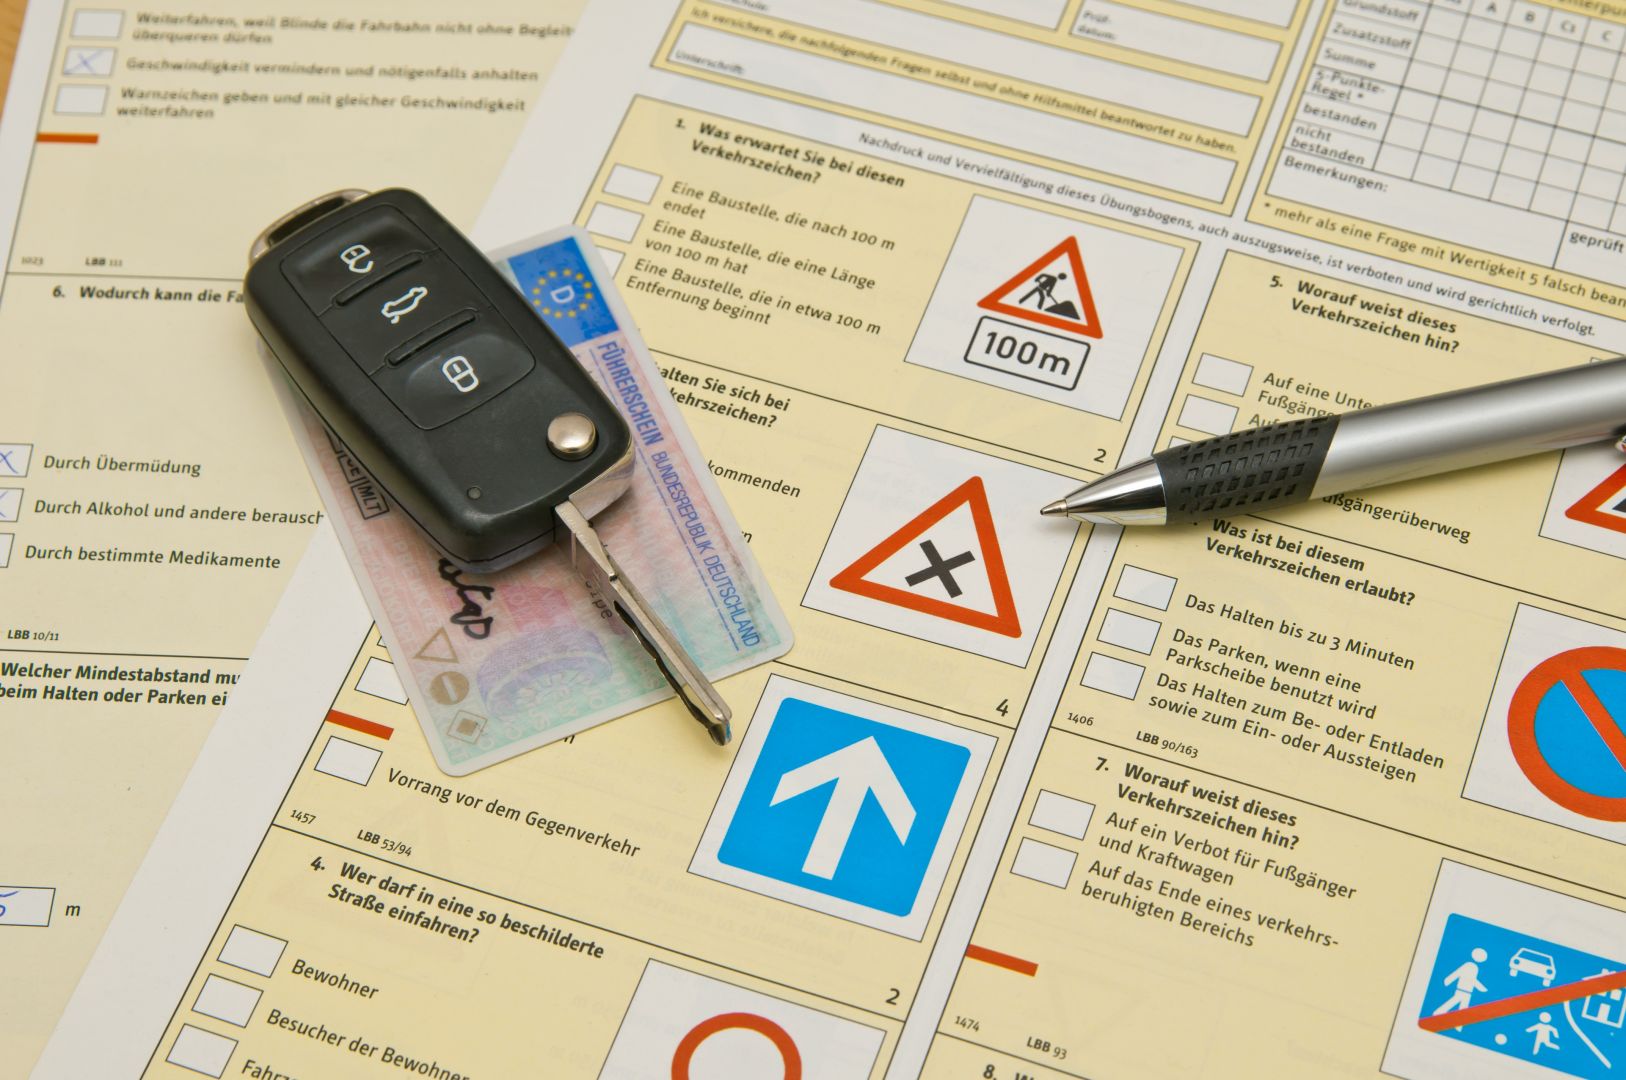 Zakázka na zajištění kurzu - rozšíření řidičského průkazu ze skupiny B na skupinu C (Autoškoly) - Praha